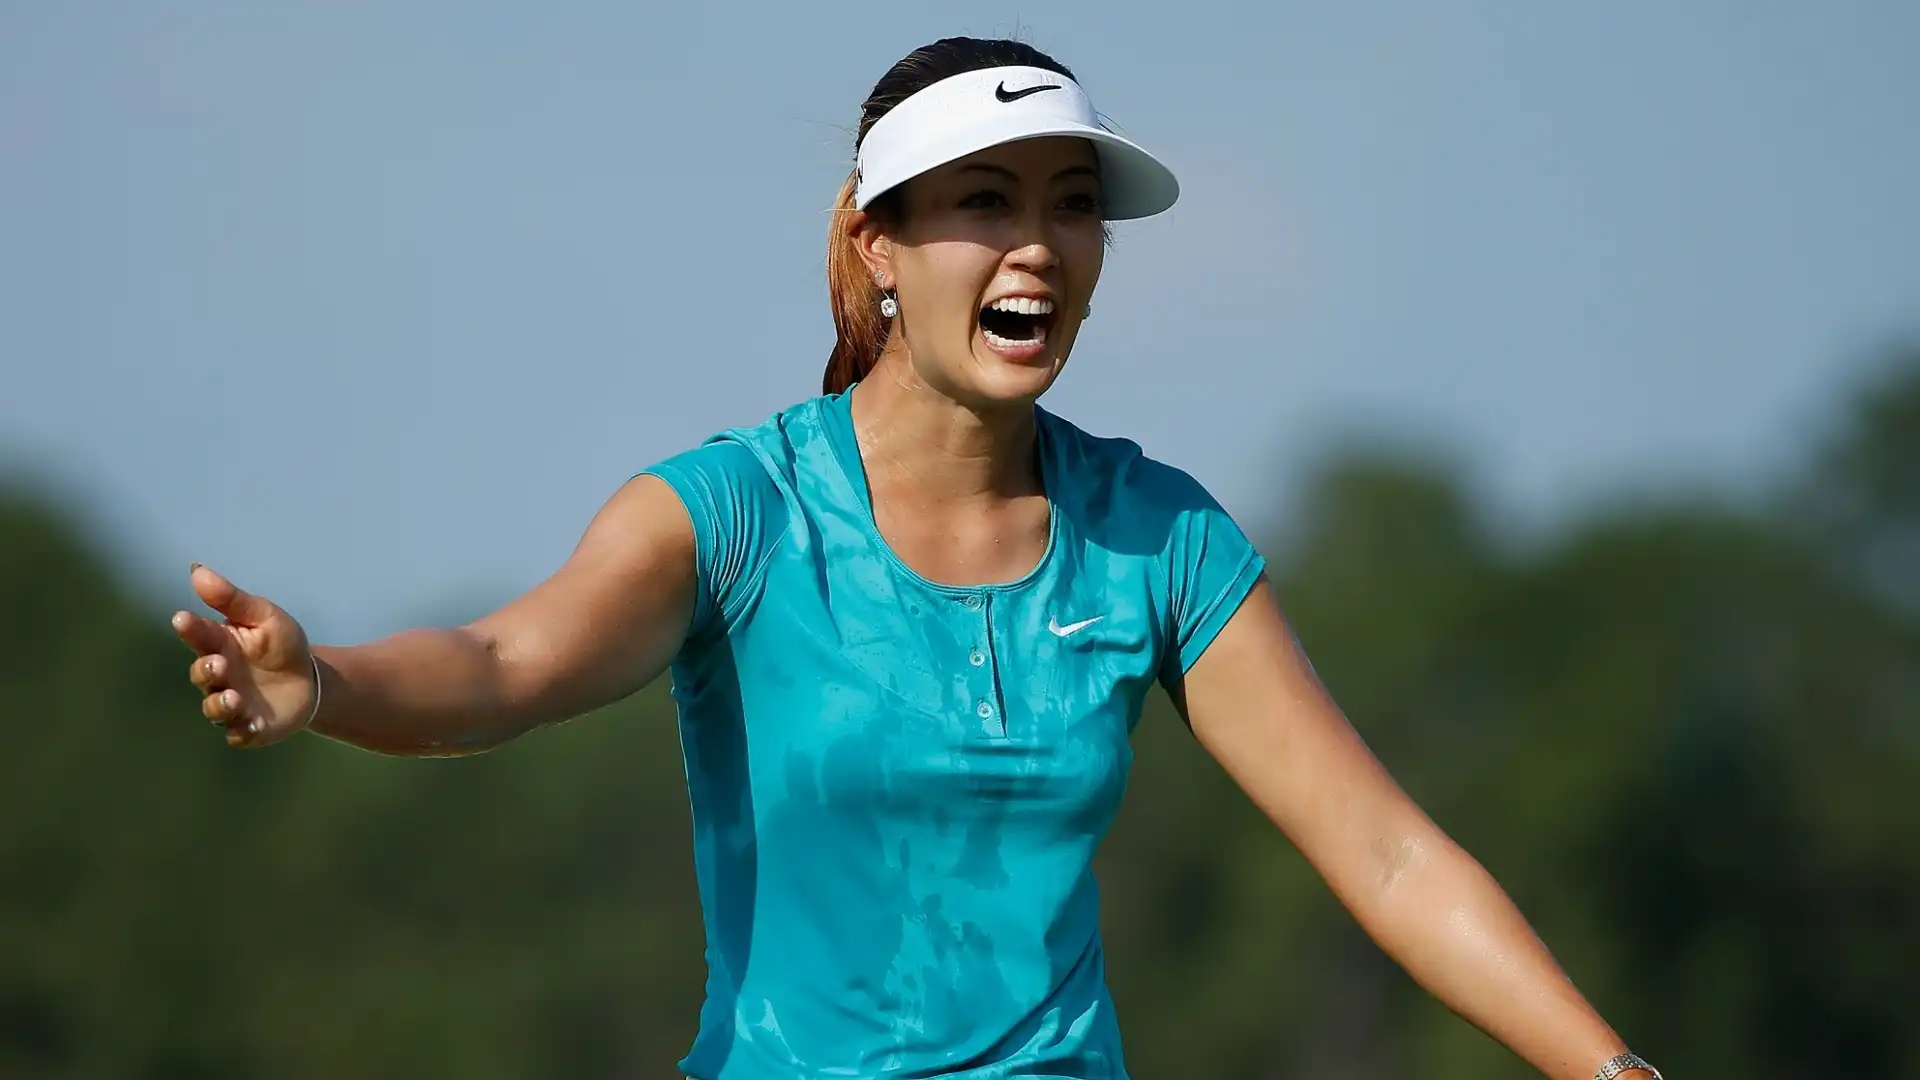 Michelle Wie (Golf, Stati Uniti): patrimonio netto stimato 20 milioni di dollari. Ha vinto gli Us Women's Open nel 2014.